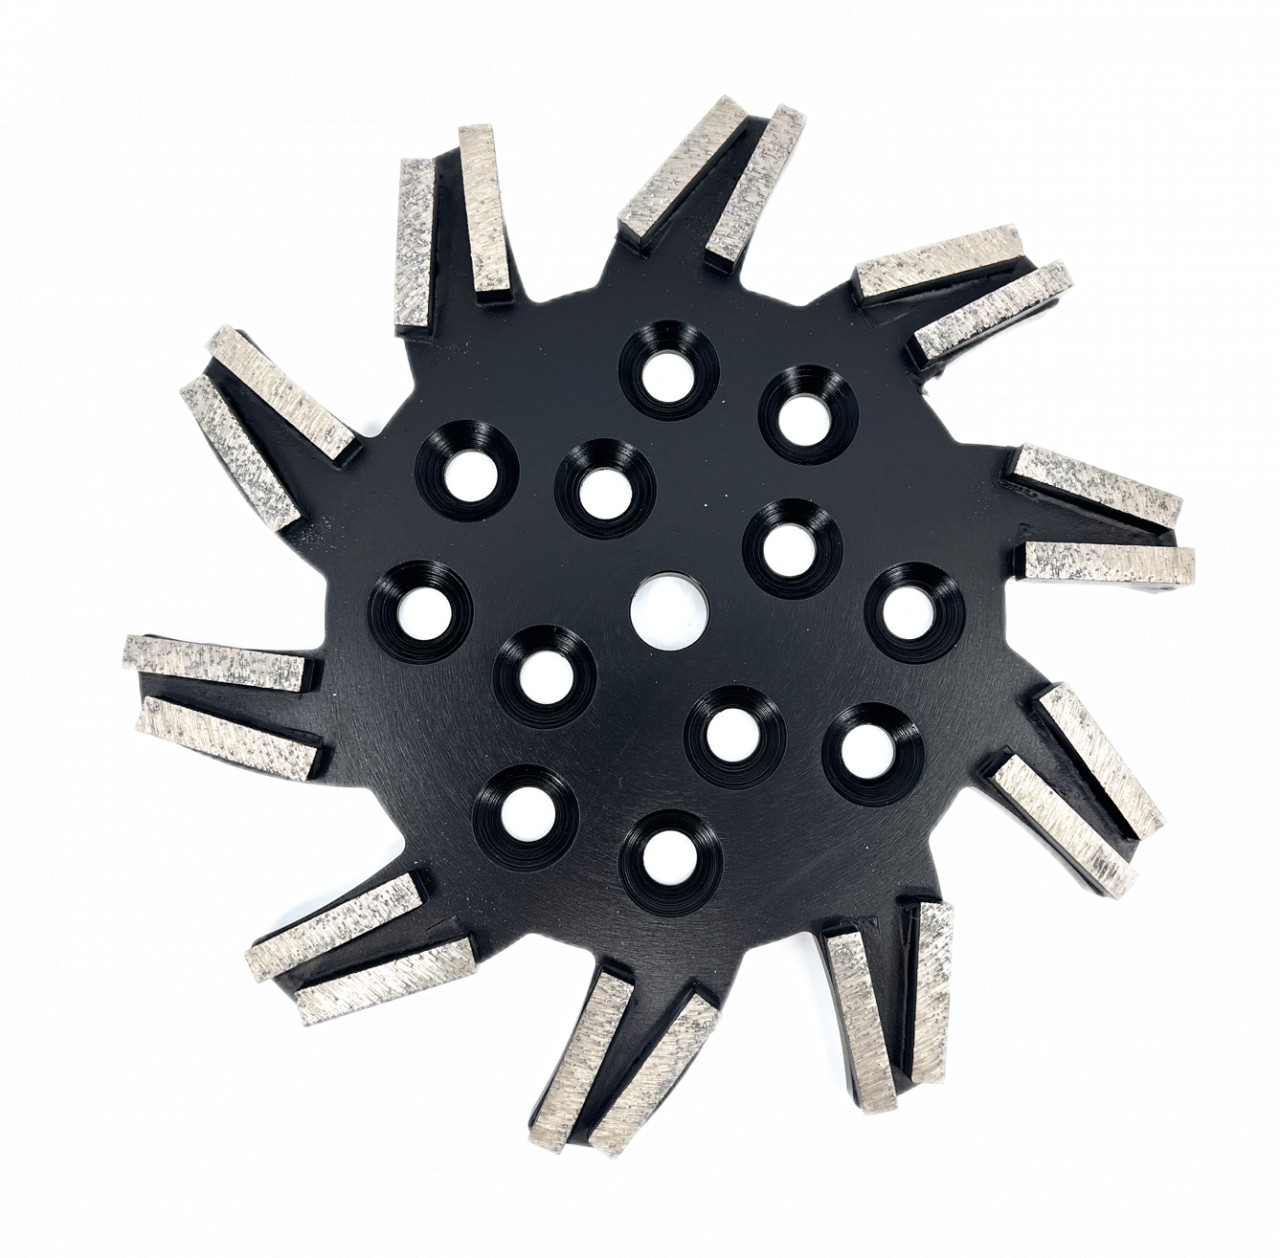 Disc stea cu segmenti diamantati pt. slefuire pardoseli – segment foarte fin – Negru – 250 mm – prindere 19mm – DXDY.8501.250.11.73 19mm imagine 2022